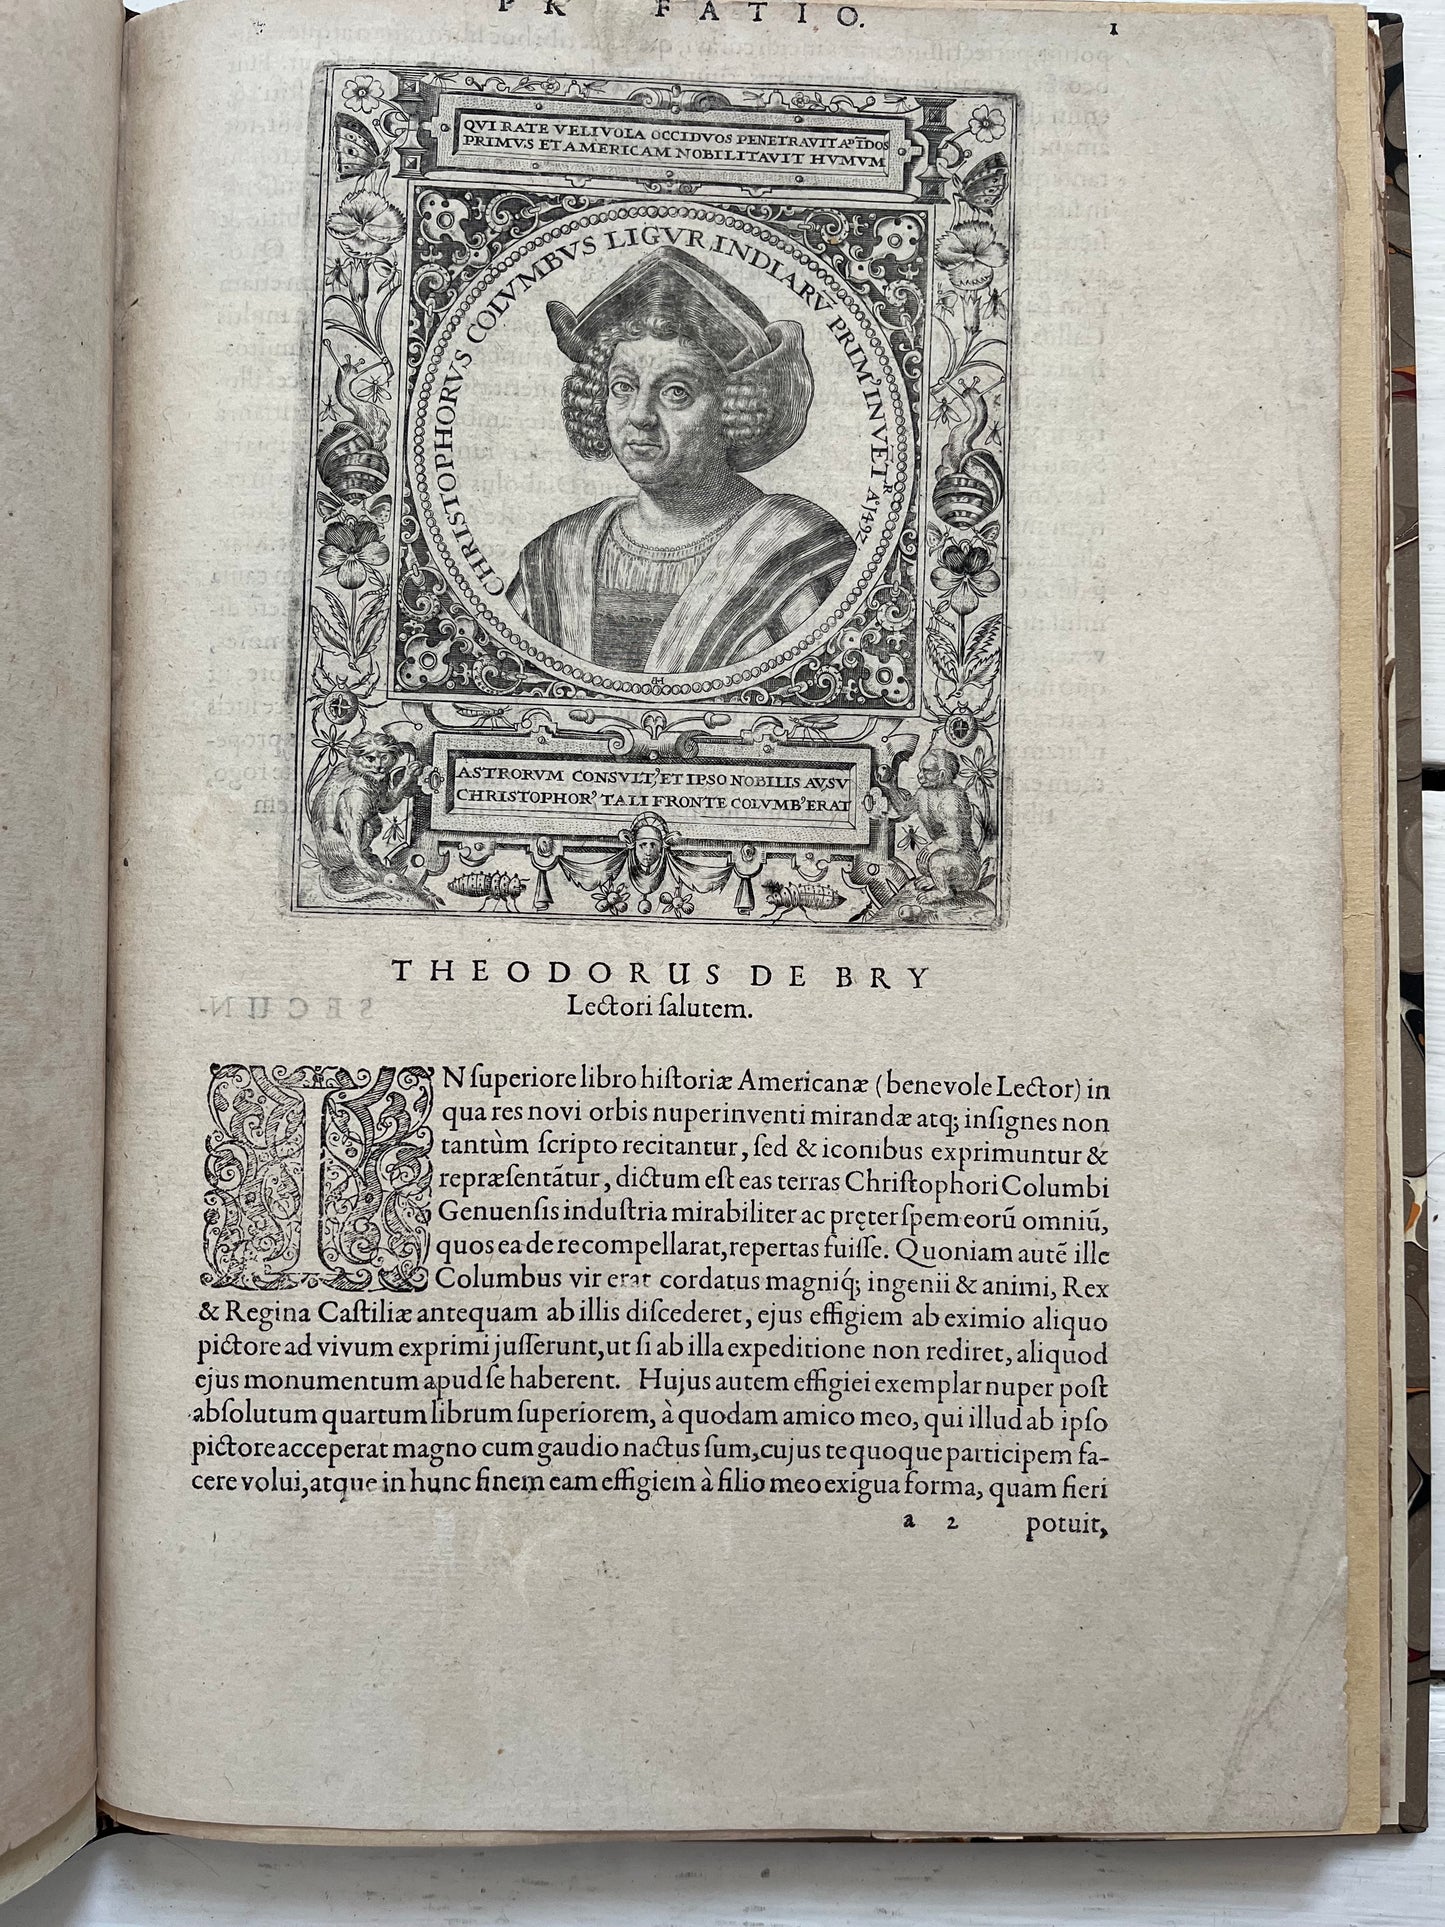 Americae pars Quinta - De Bry - 1617 - Benzoni